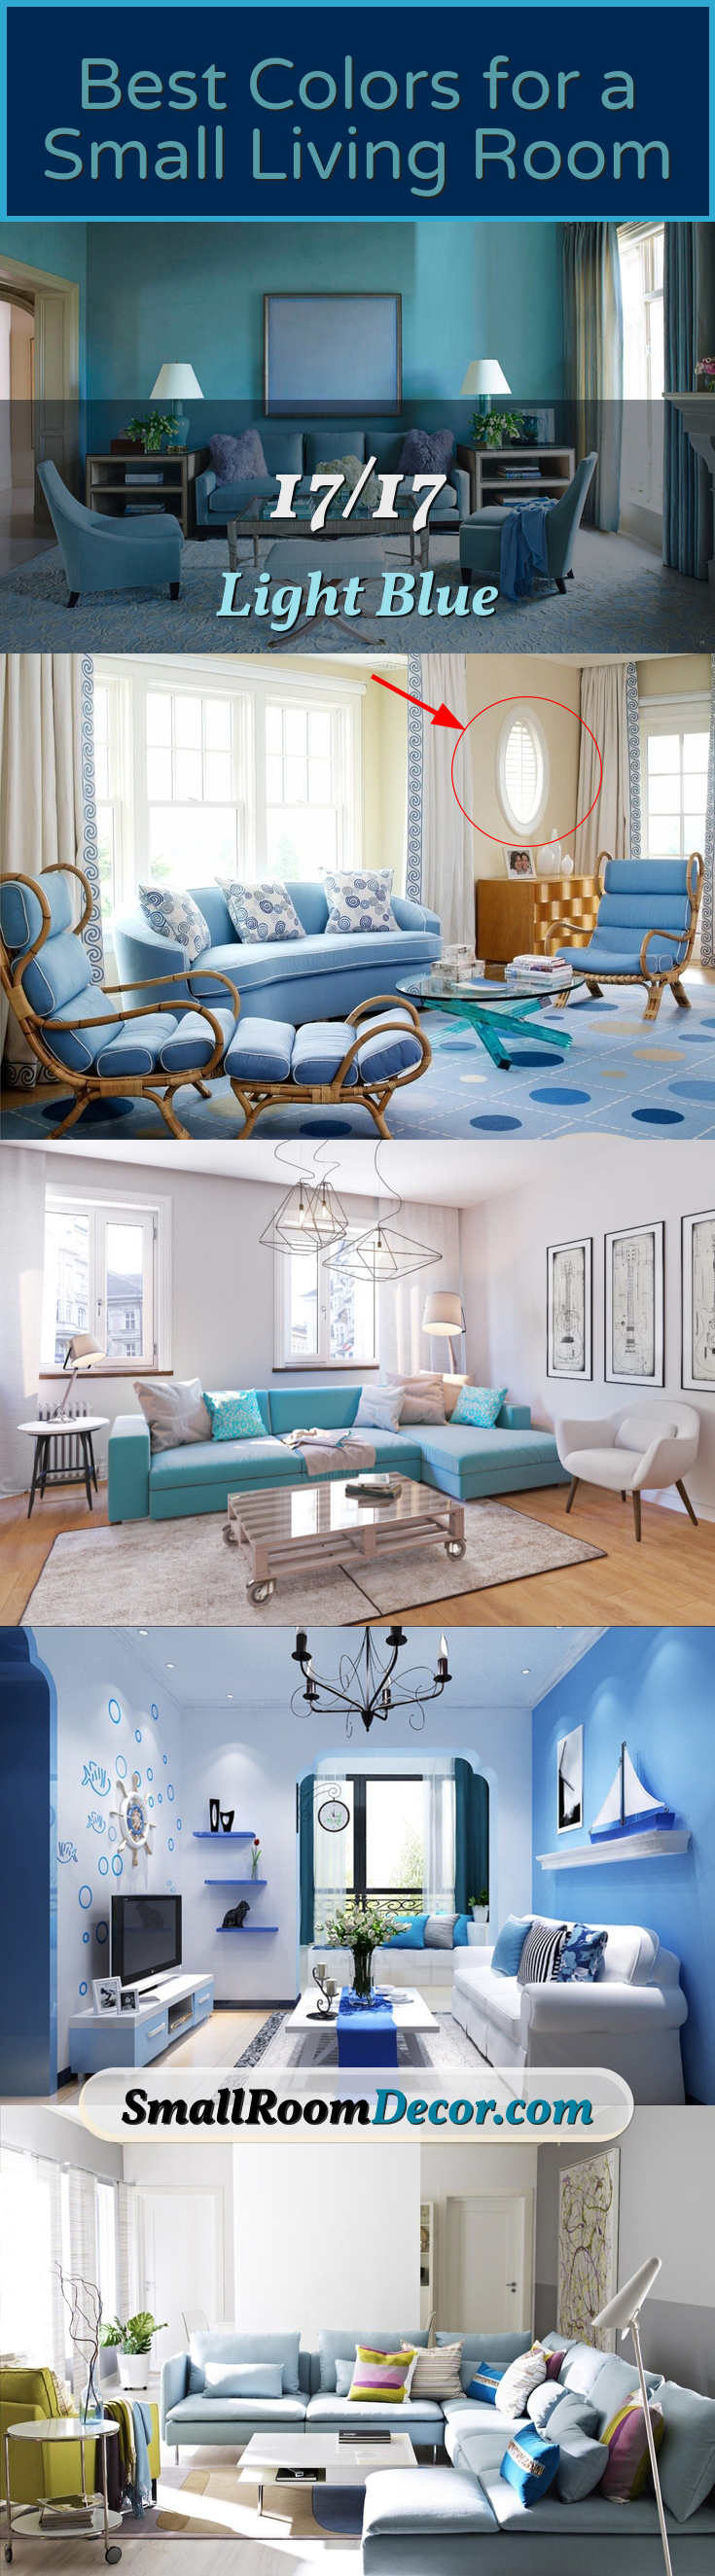 Light blue livingroom #livingroompaintcolorideas